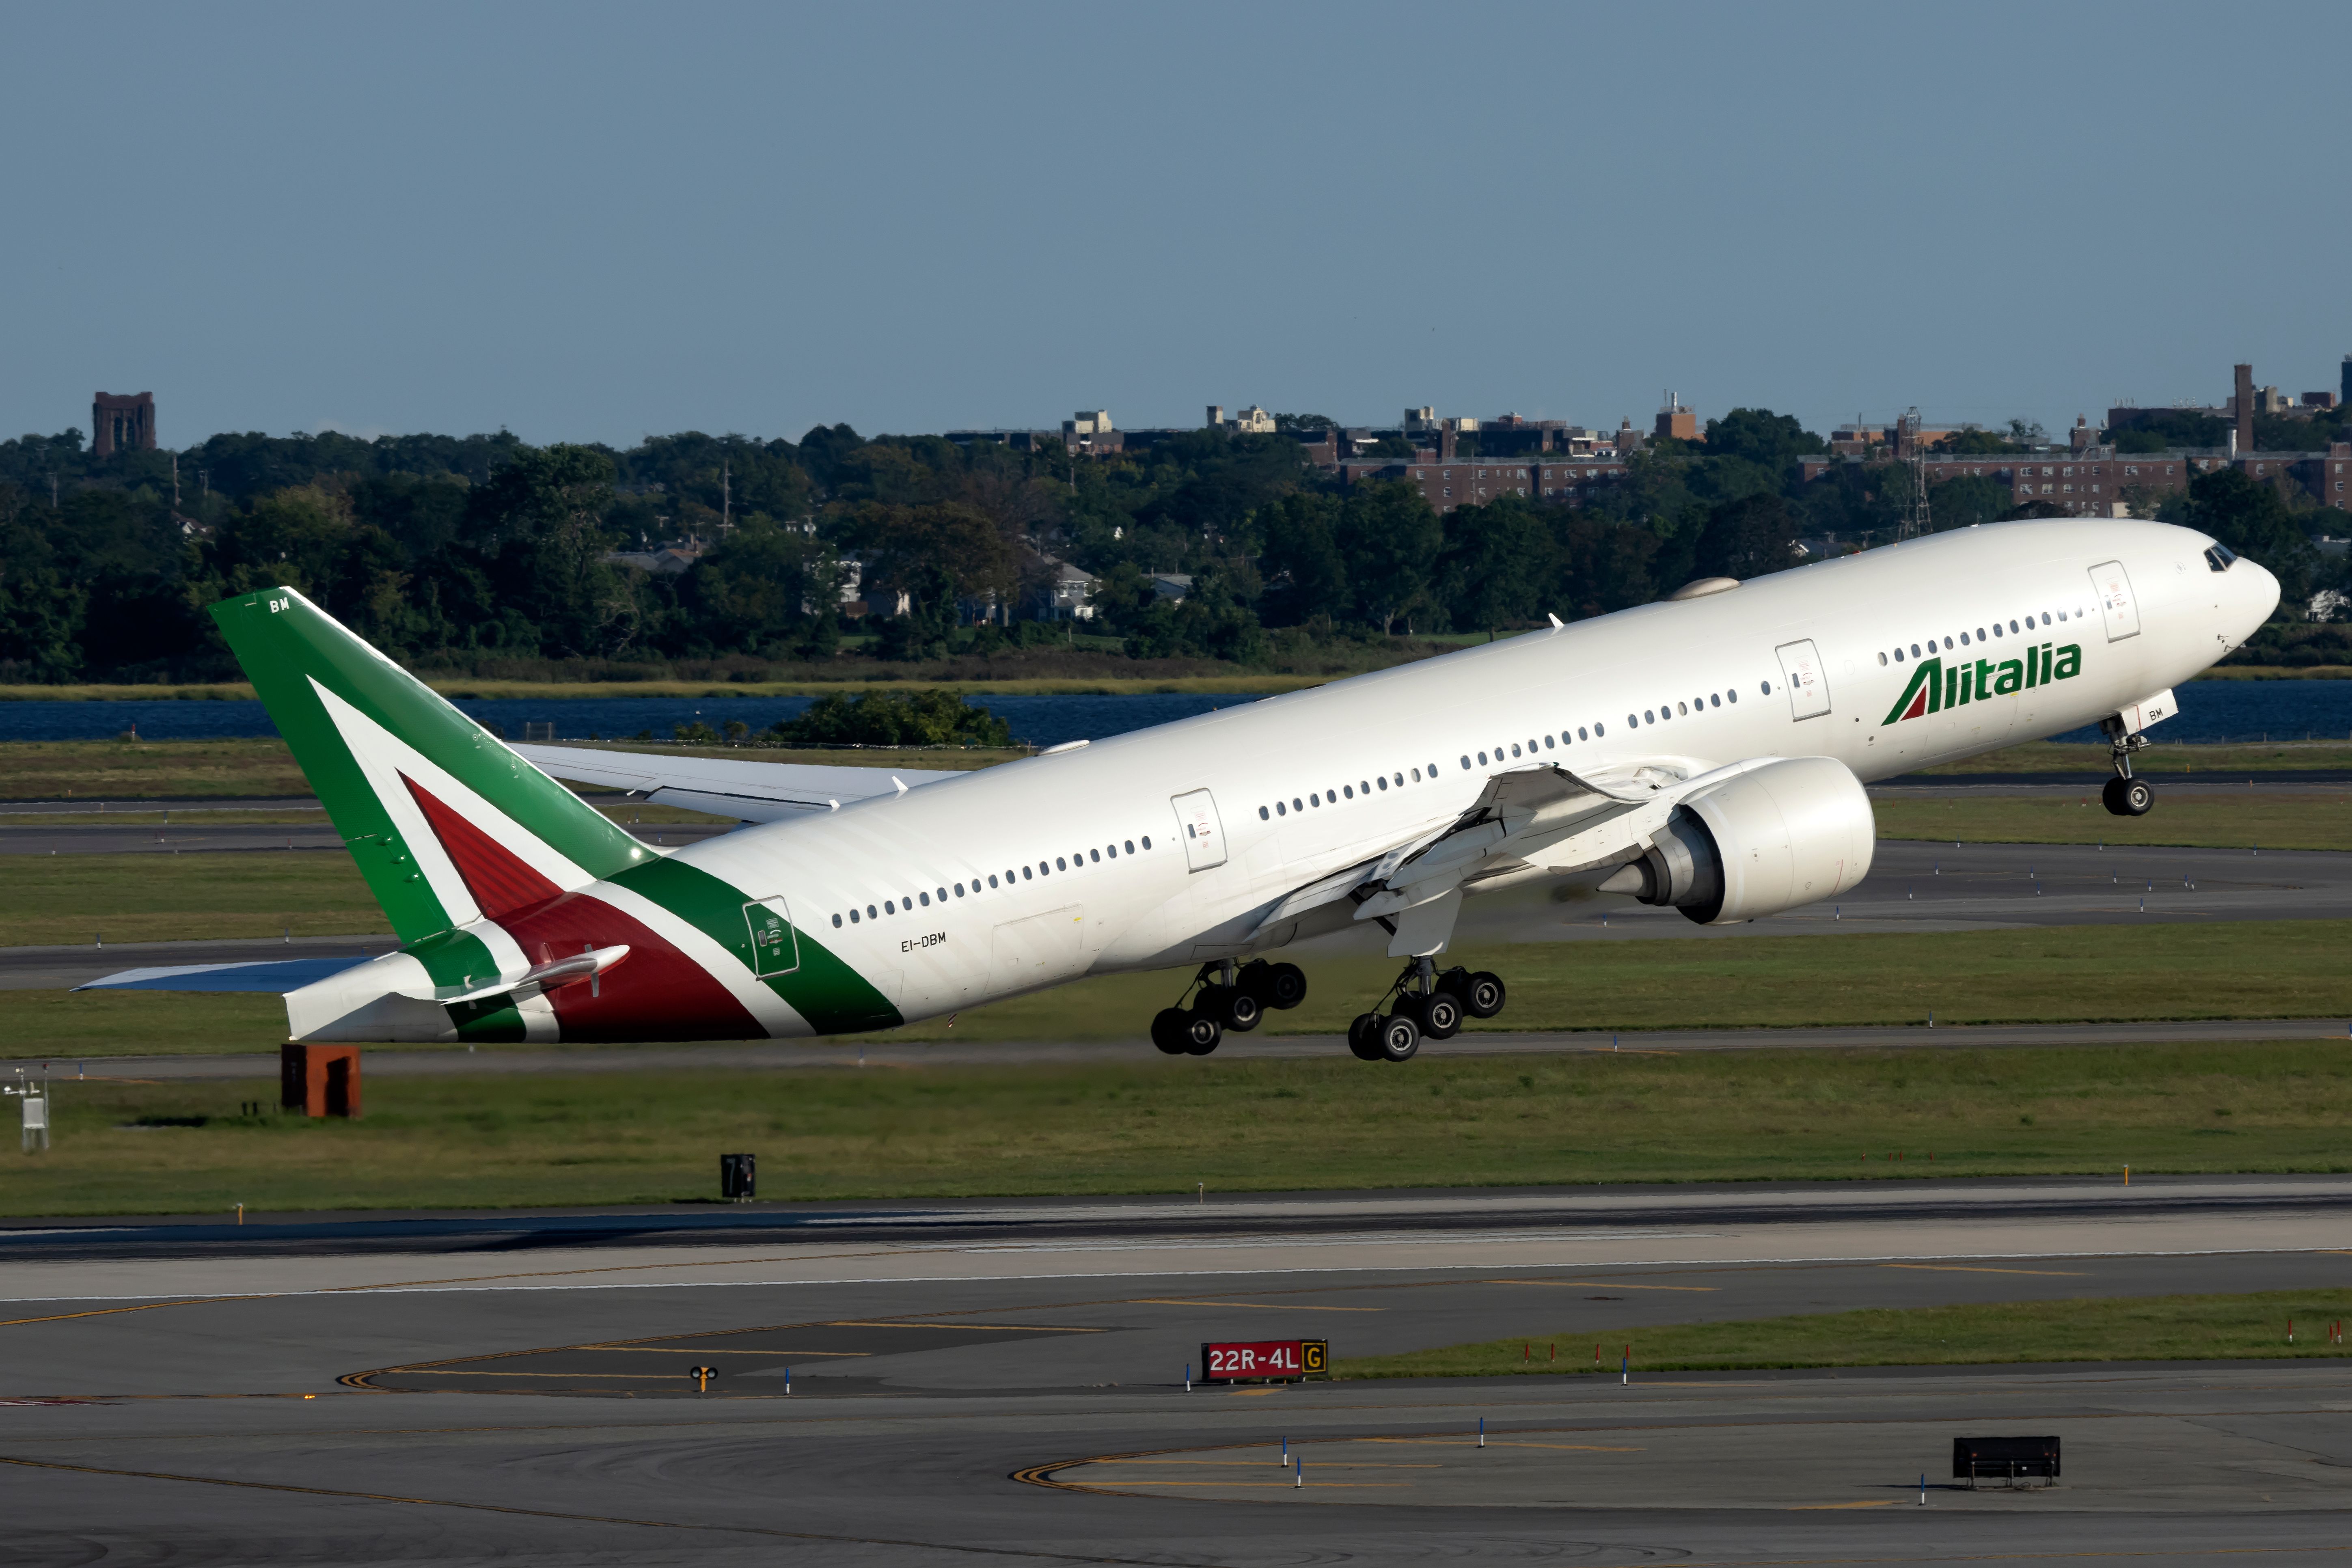 Alitalia Boeing 777-200 takes off